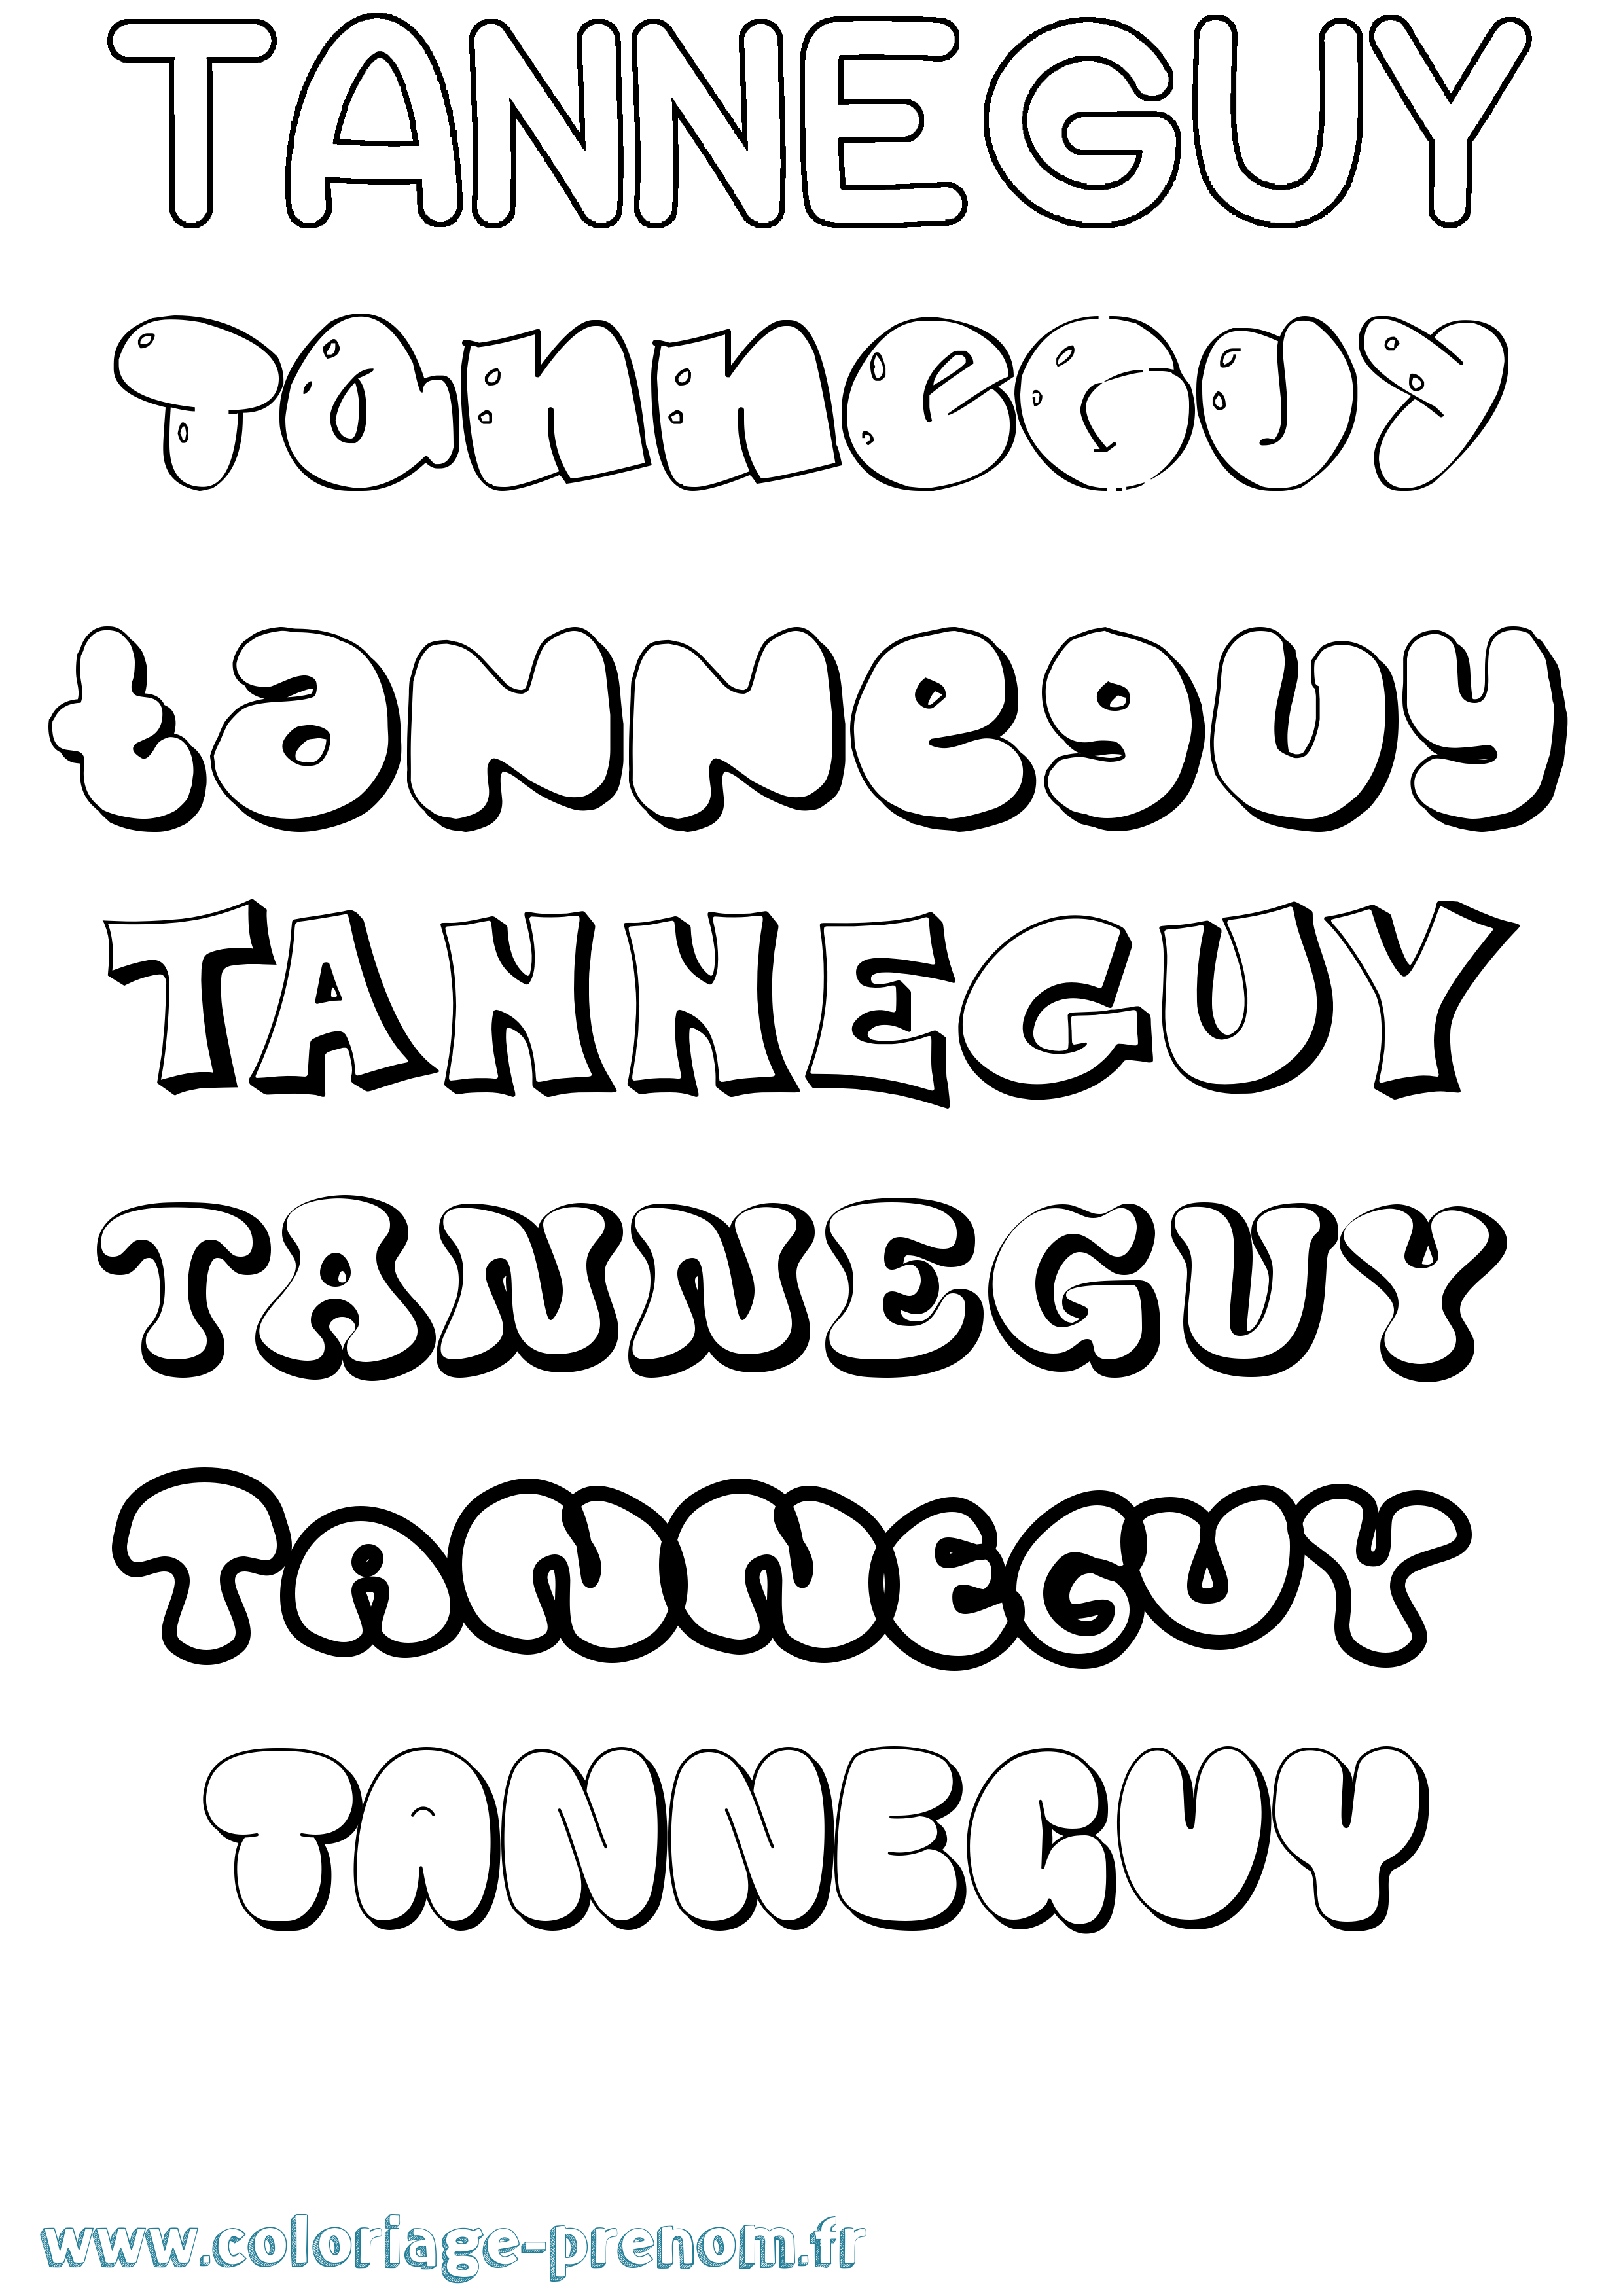 Coloriage prénom Tanneguy Bubble